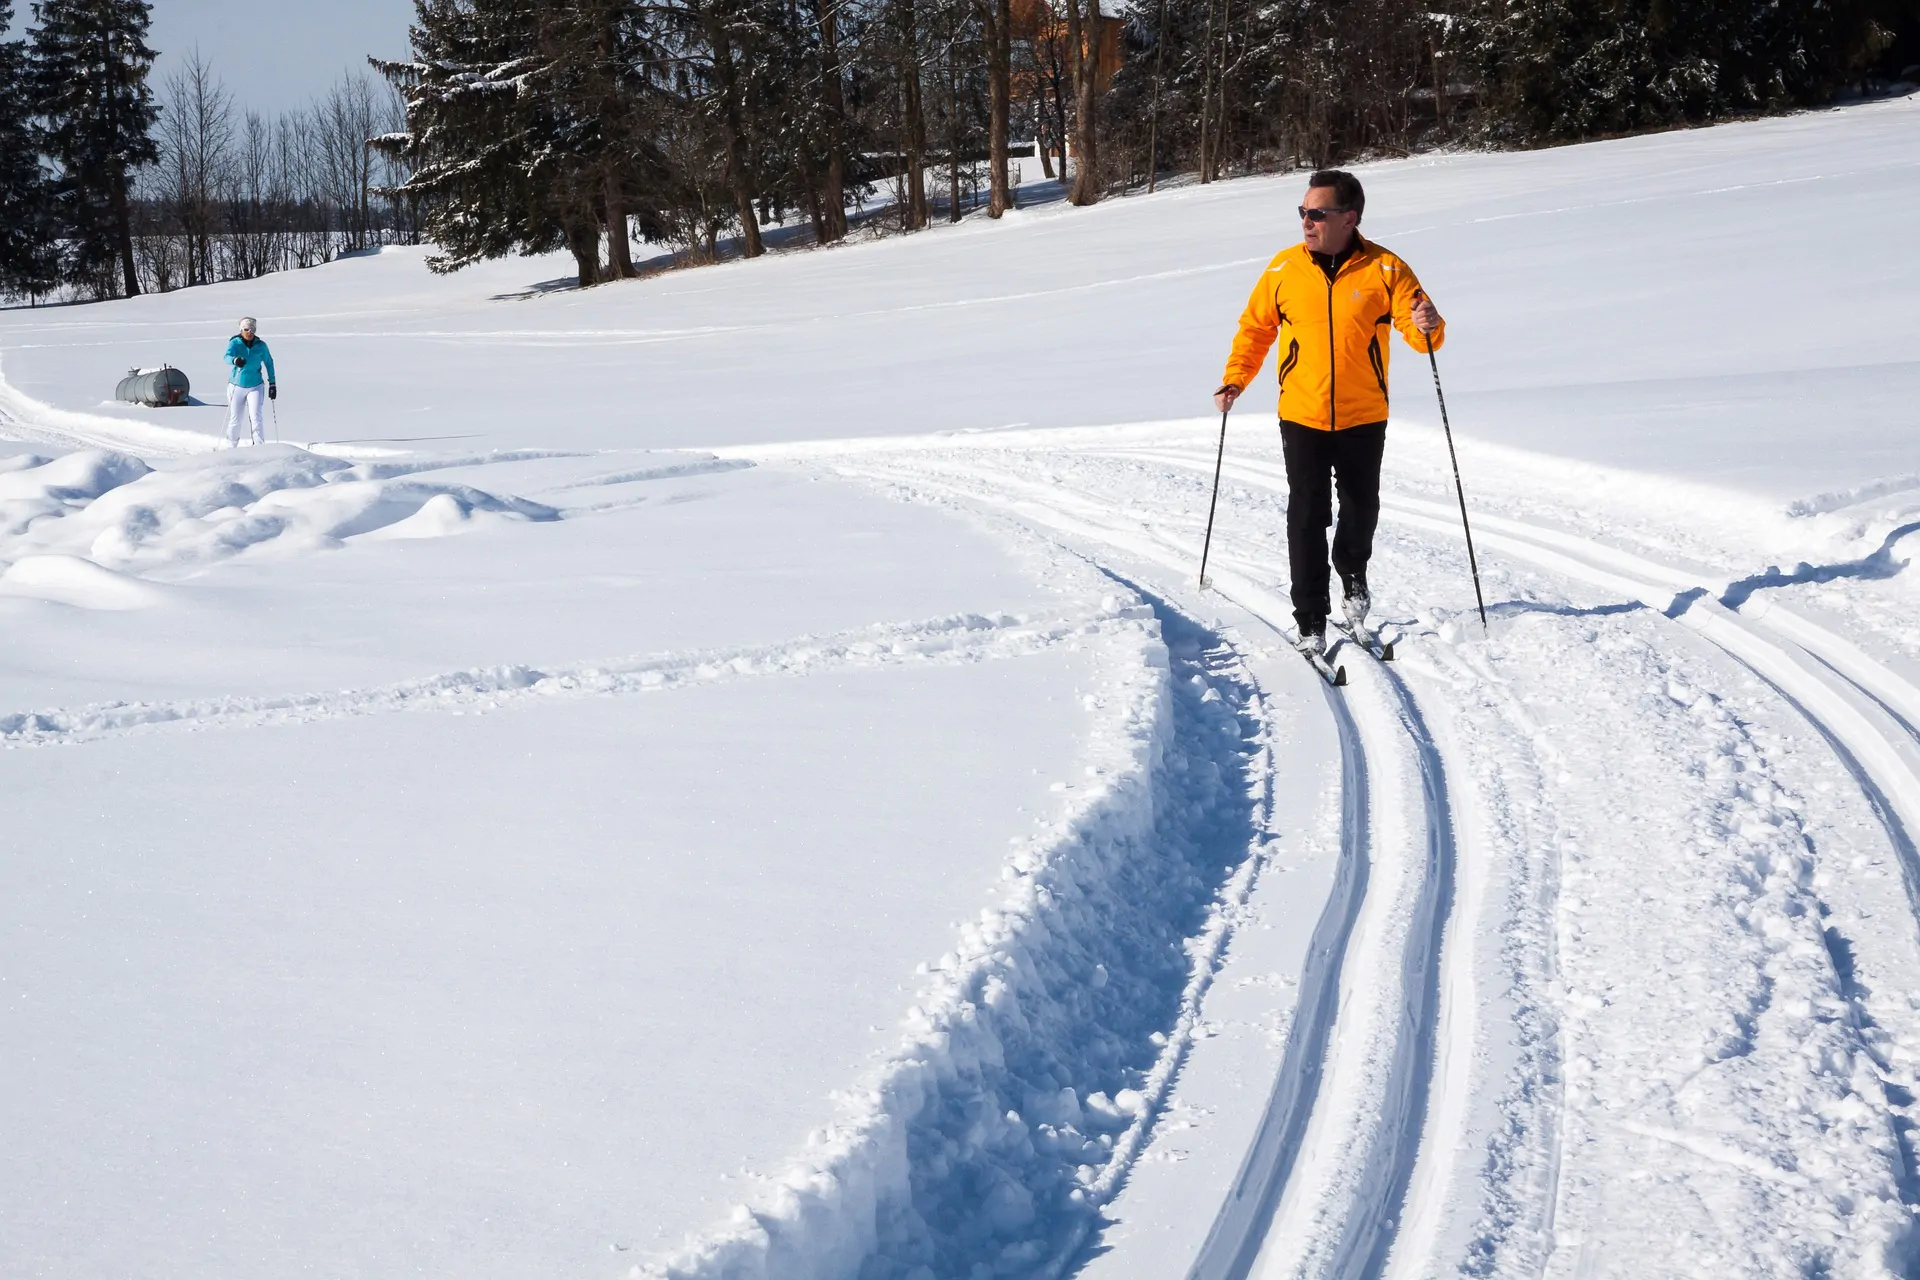 Этой зимой в Минске организуют 7 лыжных трасс с искусственным снегом